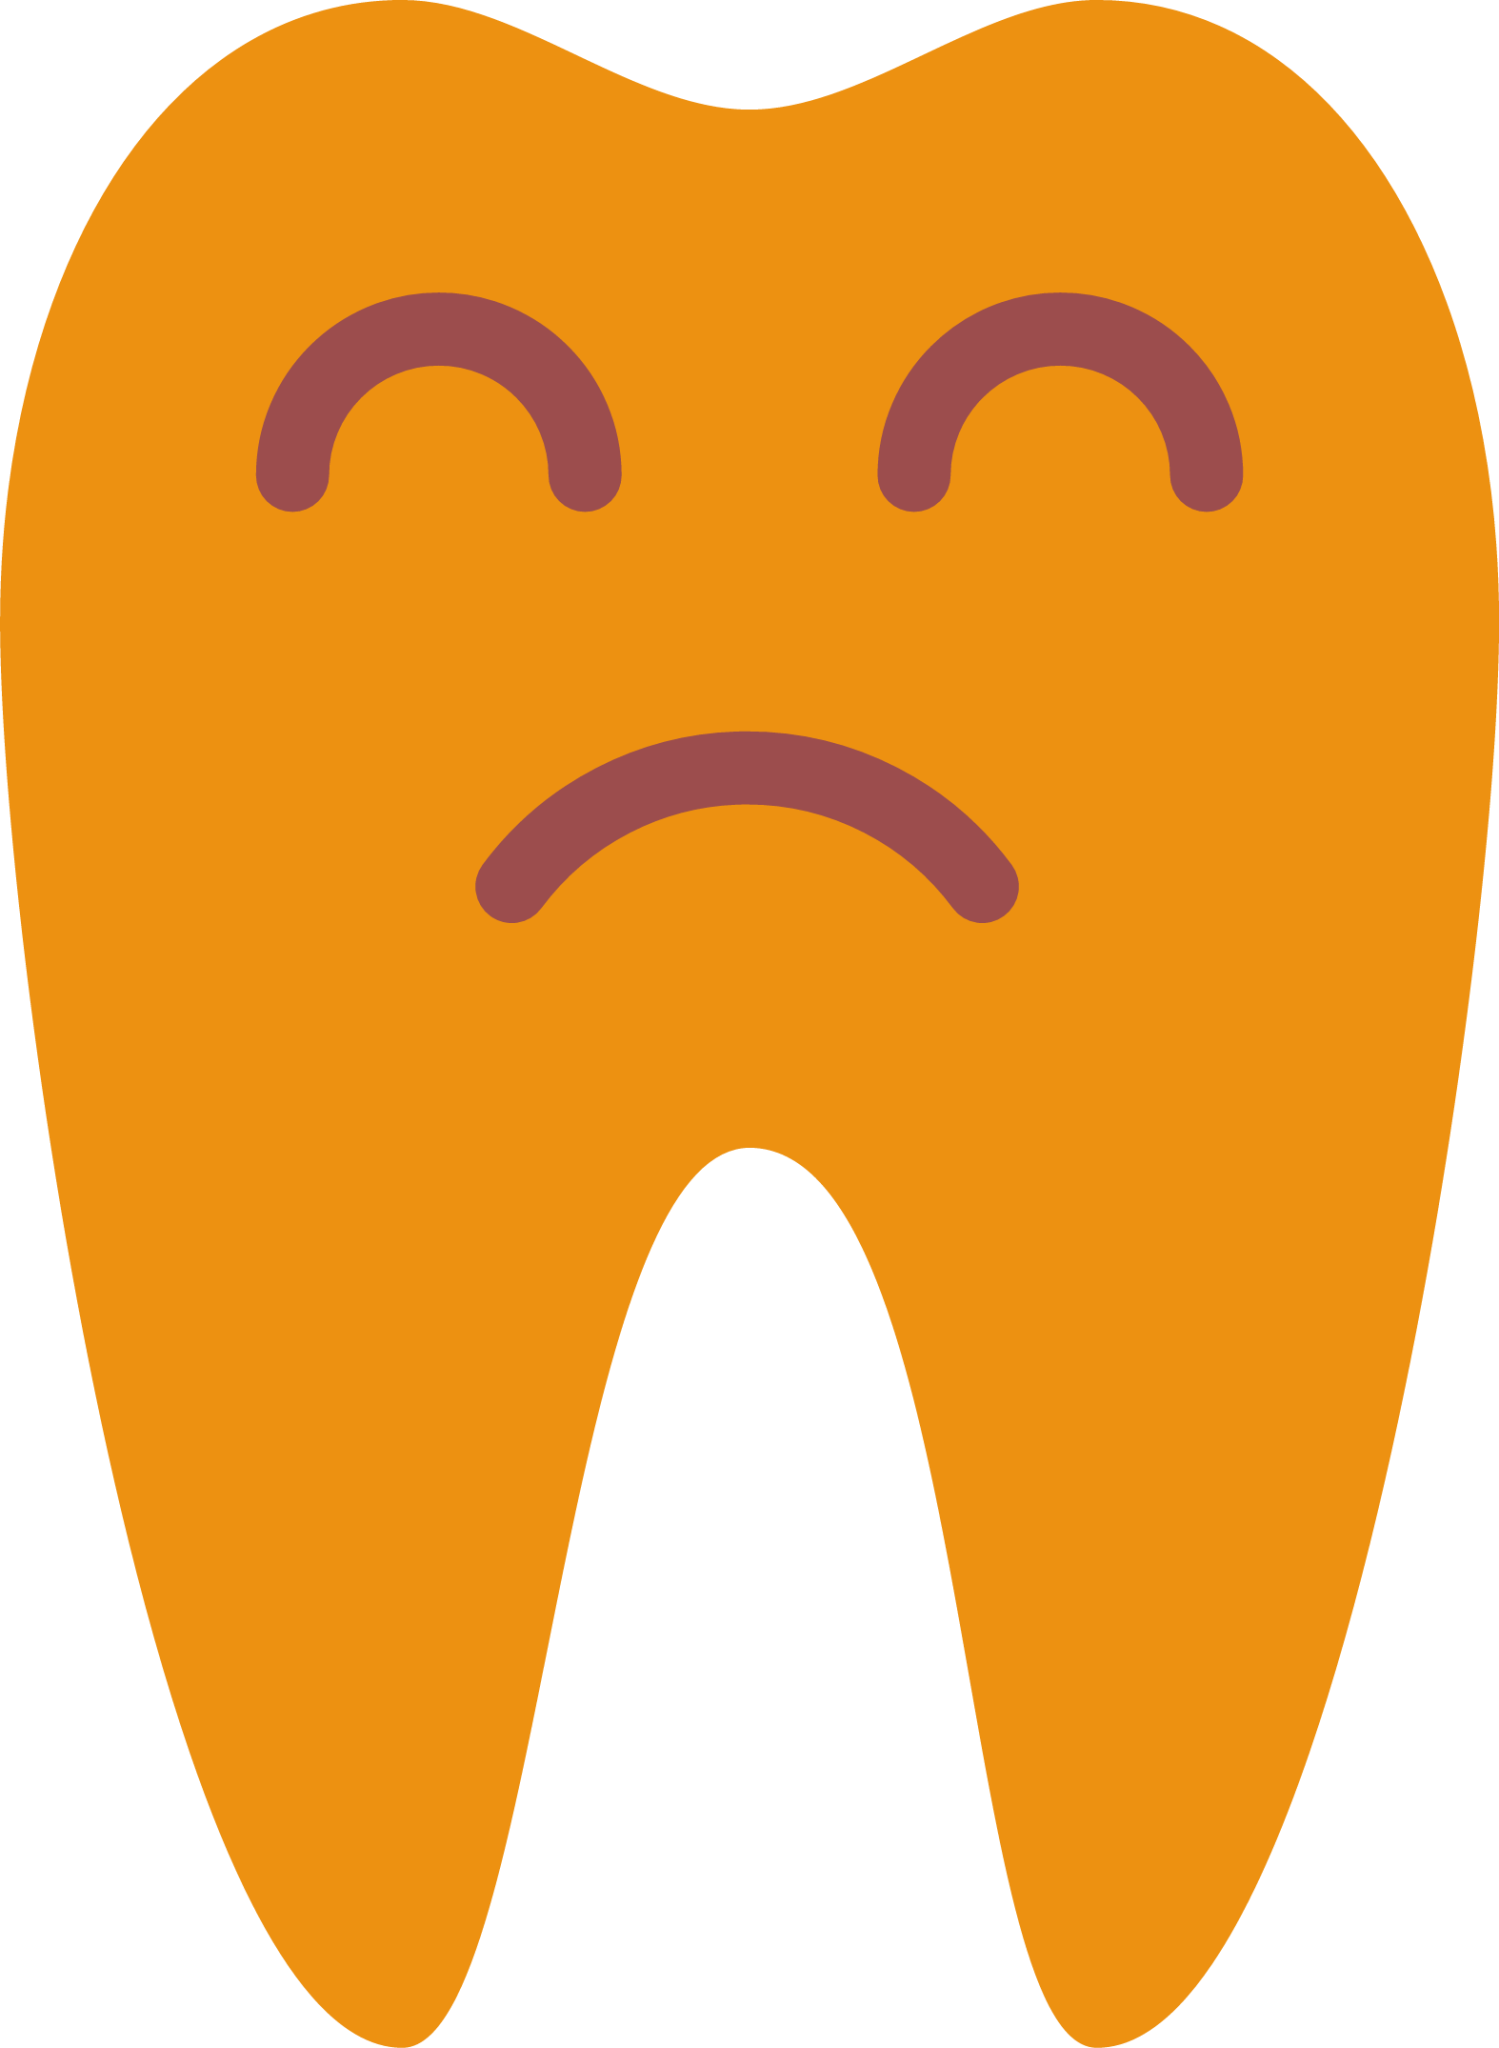 sad teeth icon